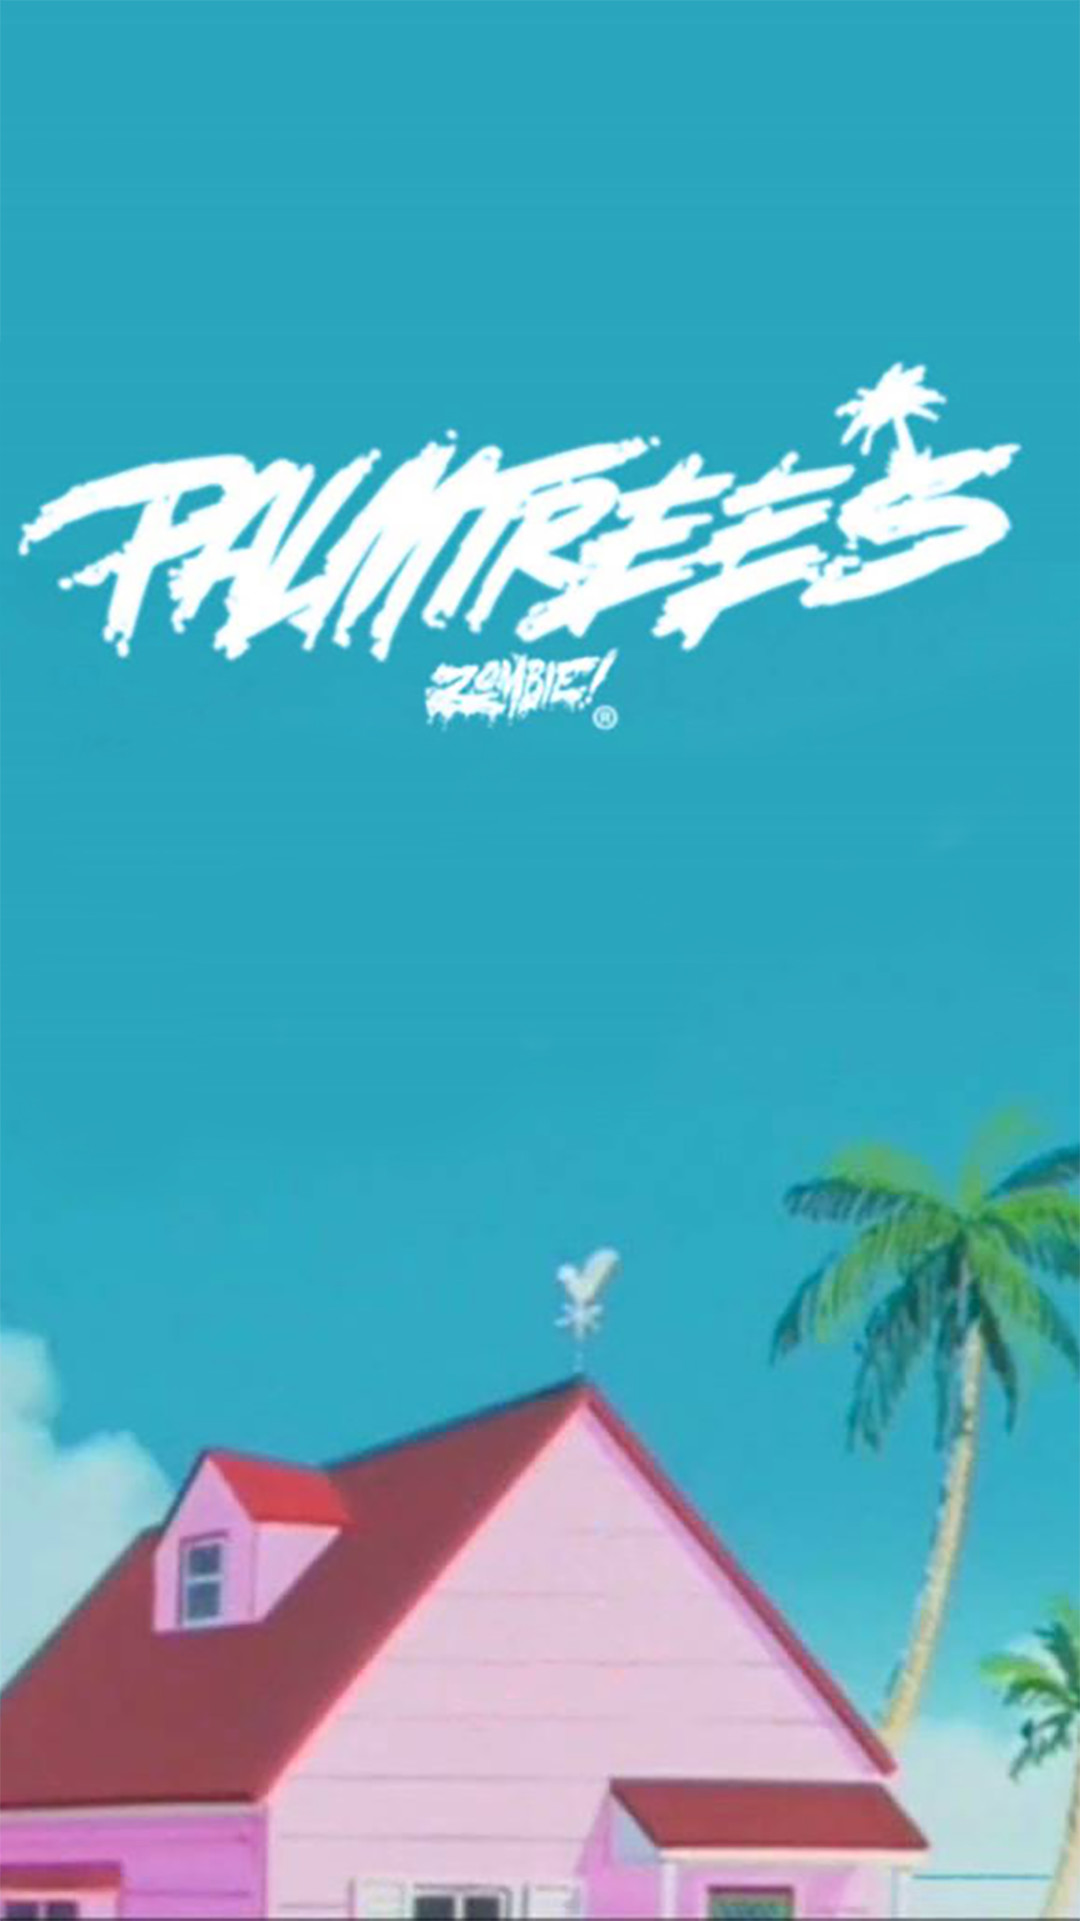 Flatbush Zombies – Palm Trees